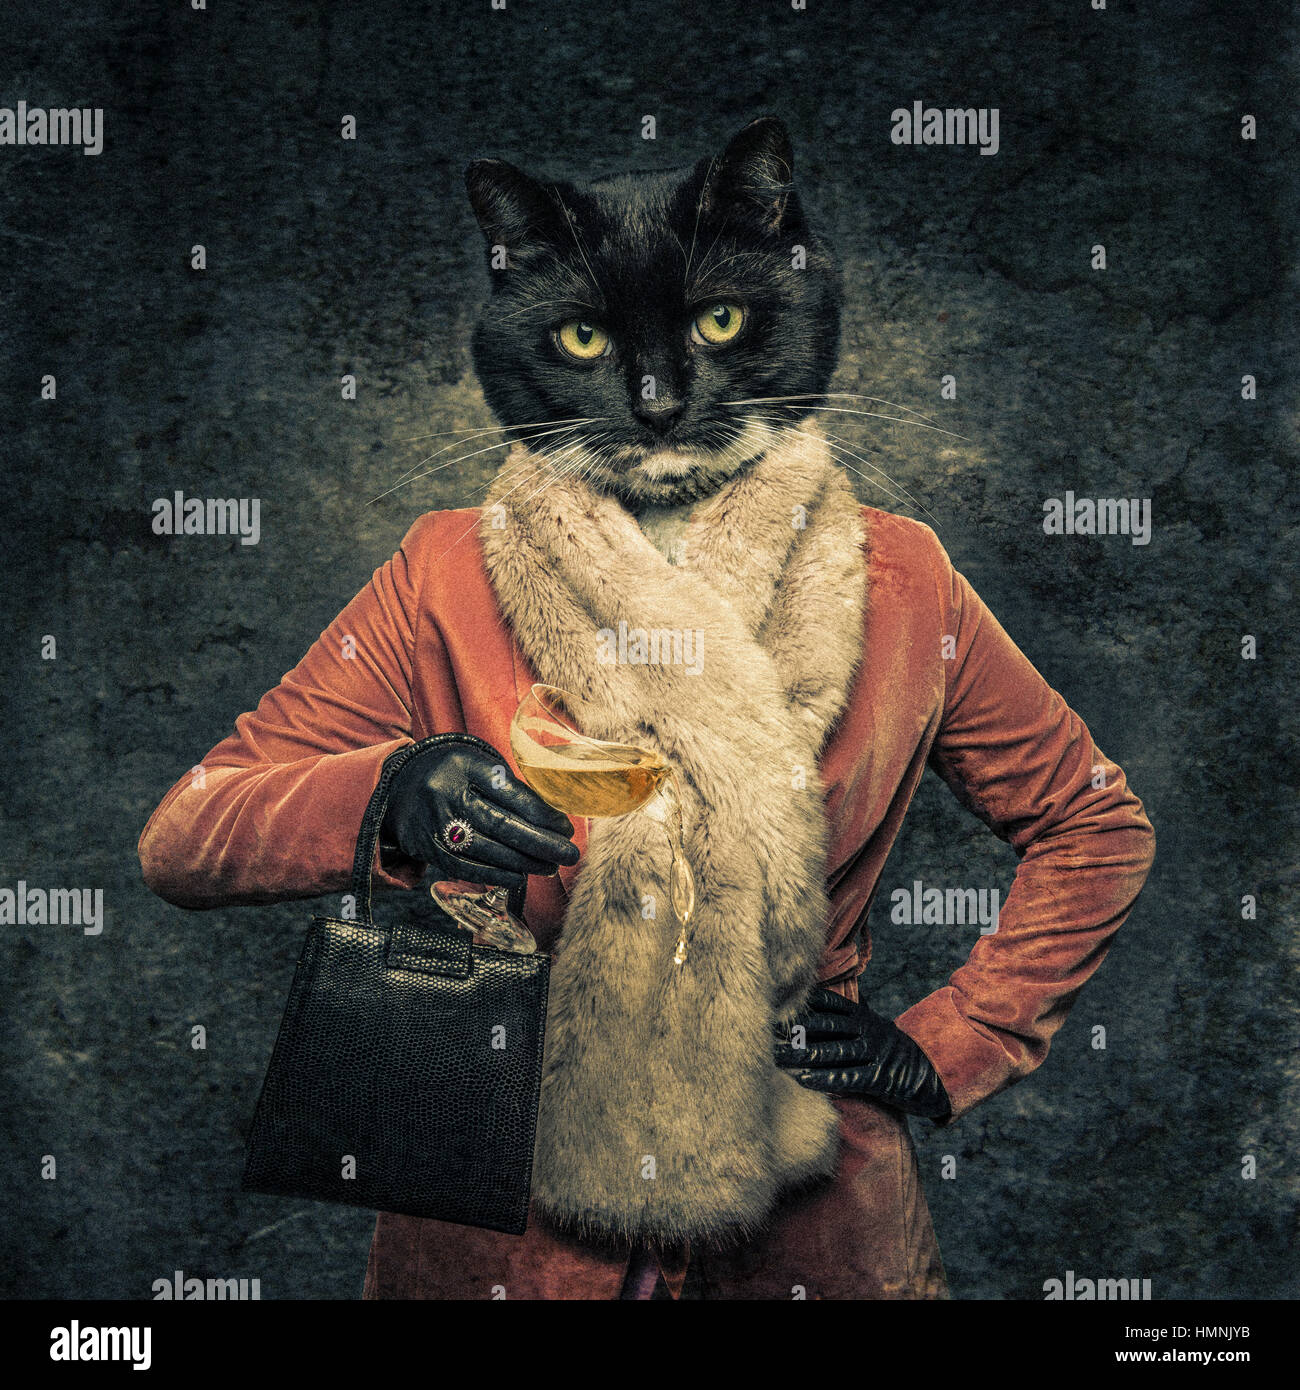 Corps humain avec tête de chat créature hybride tenant un verre et de sacs à main Banque D'Images